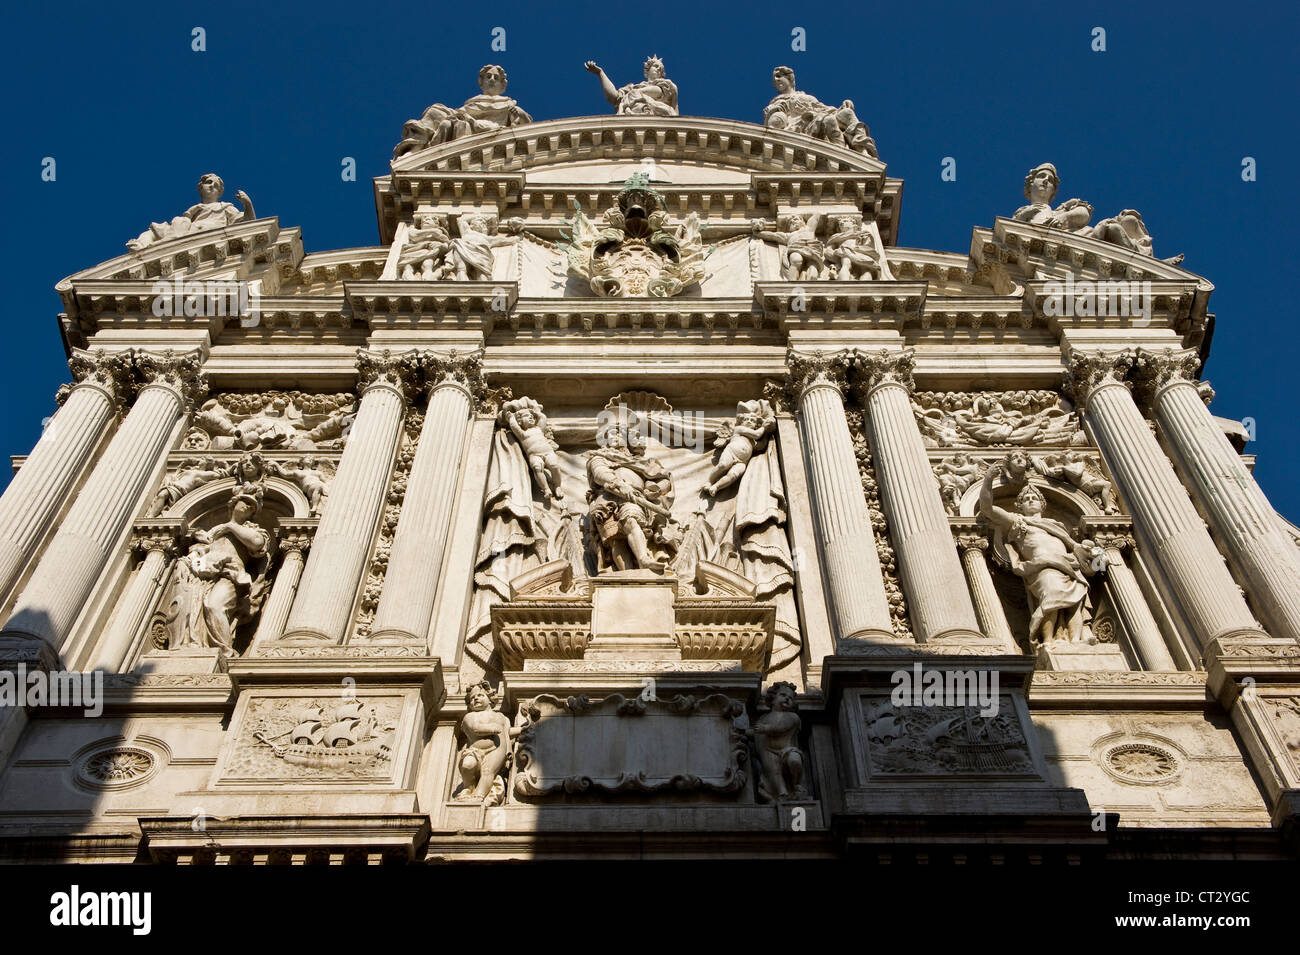 La chiesa di Santa Maria del Giglio a Venezia, meglio conosciuta come Santa Maria Zobenigo. Ricostruito nel 1681, ha una superba facciata barocca veneziana Foto Stock